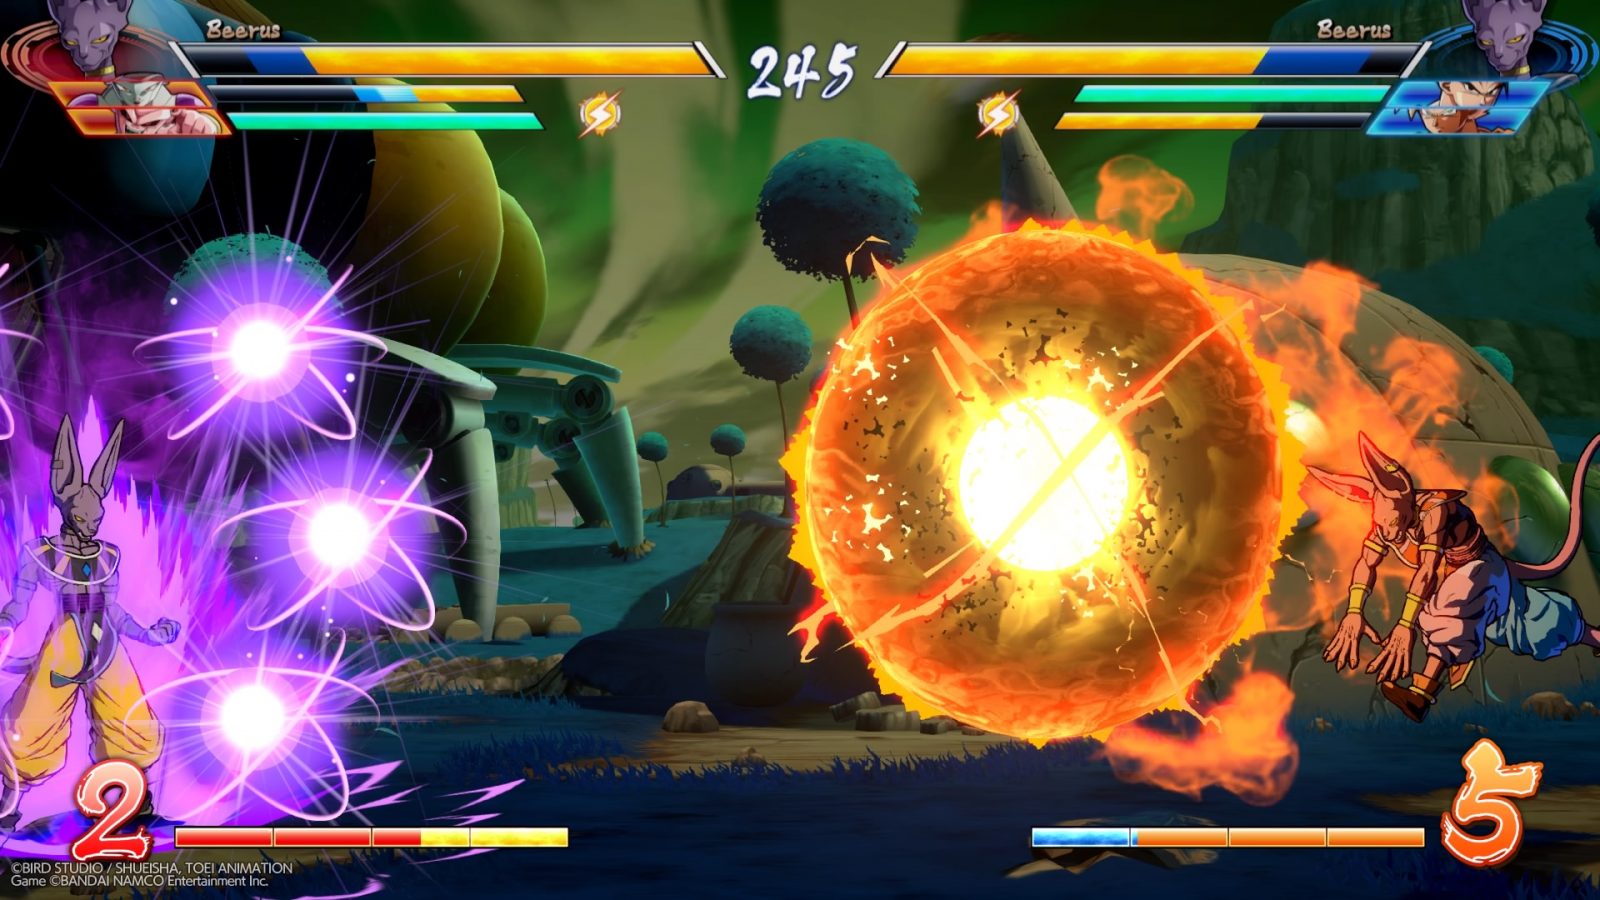 Dragon Ball FighterZ: Open Beta Online Gameplay - W2Mnet